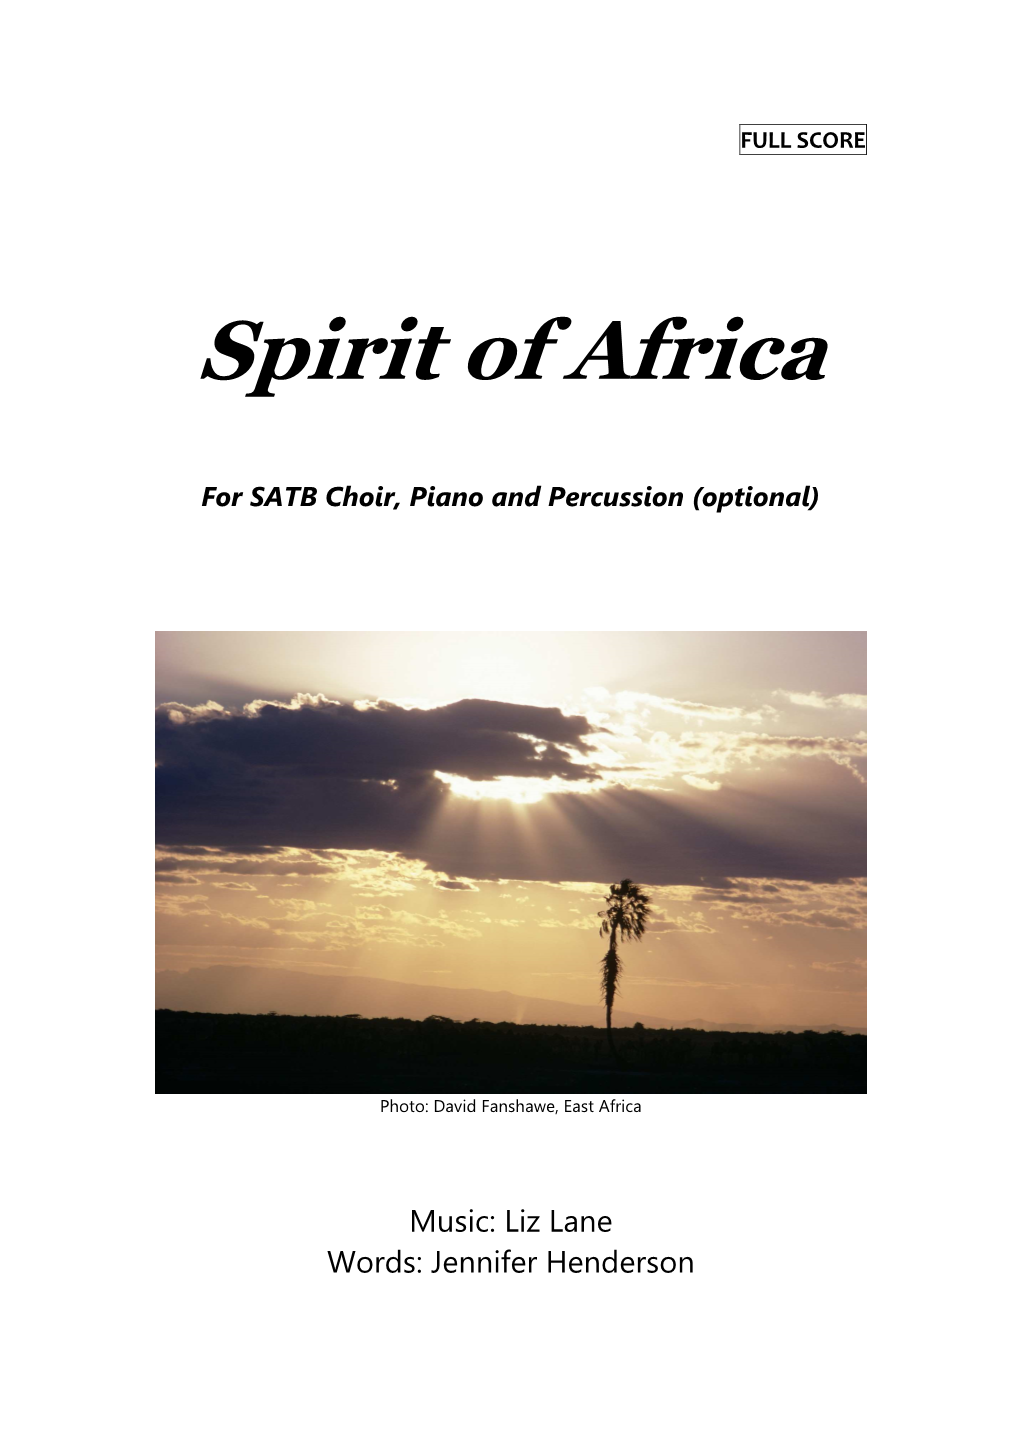 1. Spirit of Africa